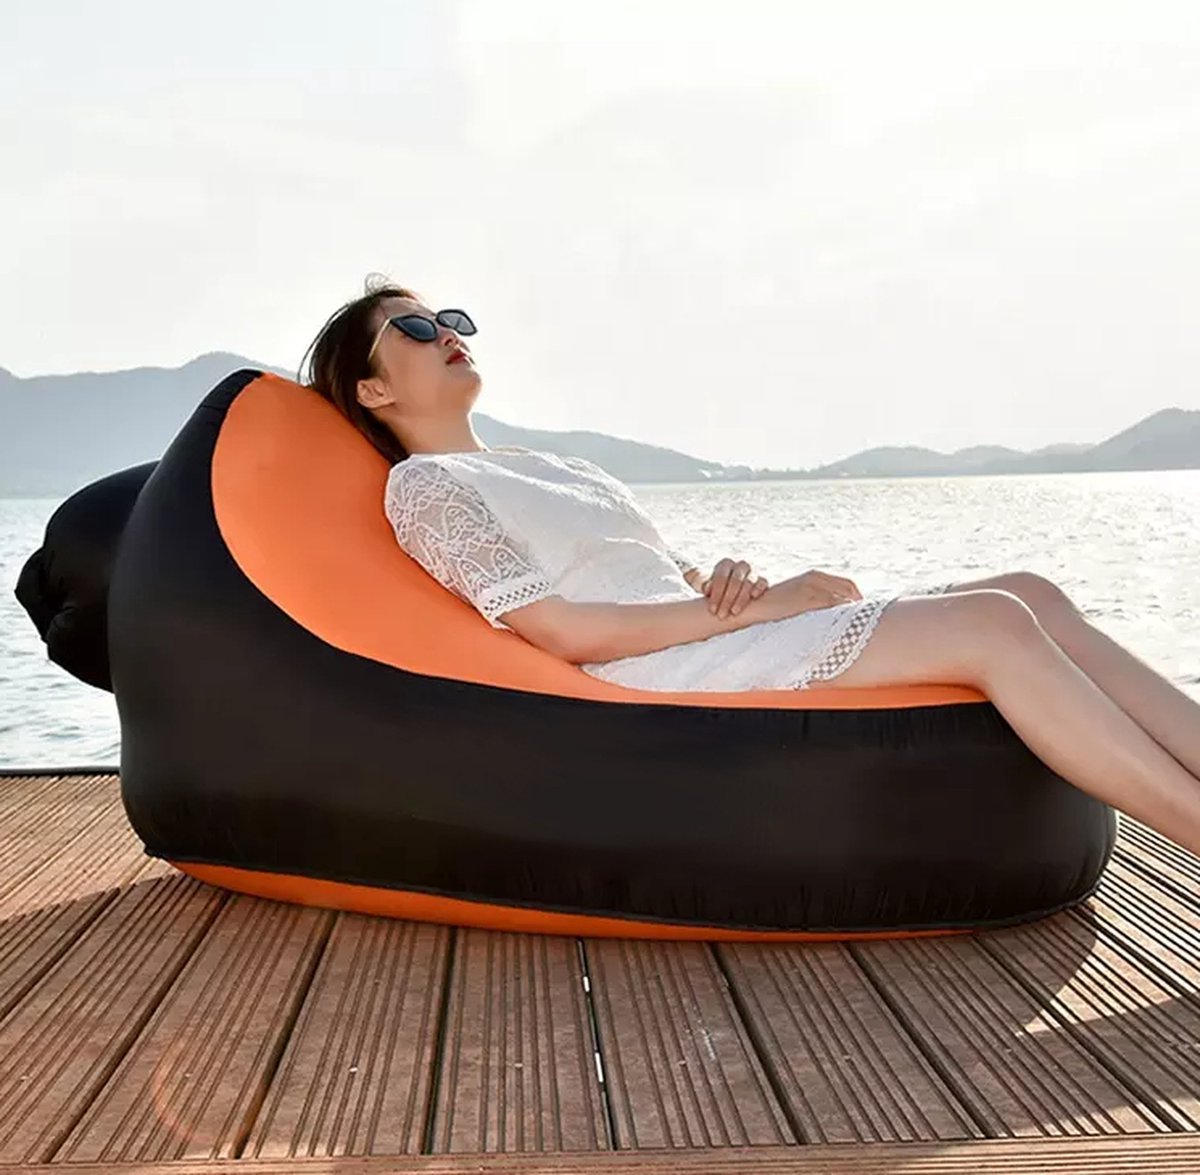 Hikr Air Lounger - Premium Airlounger 150KG - Opblaasbare zitzak zwembad - Lucht zitzak & ligbed outdoor - Luchtzak & ligzak strand